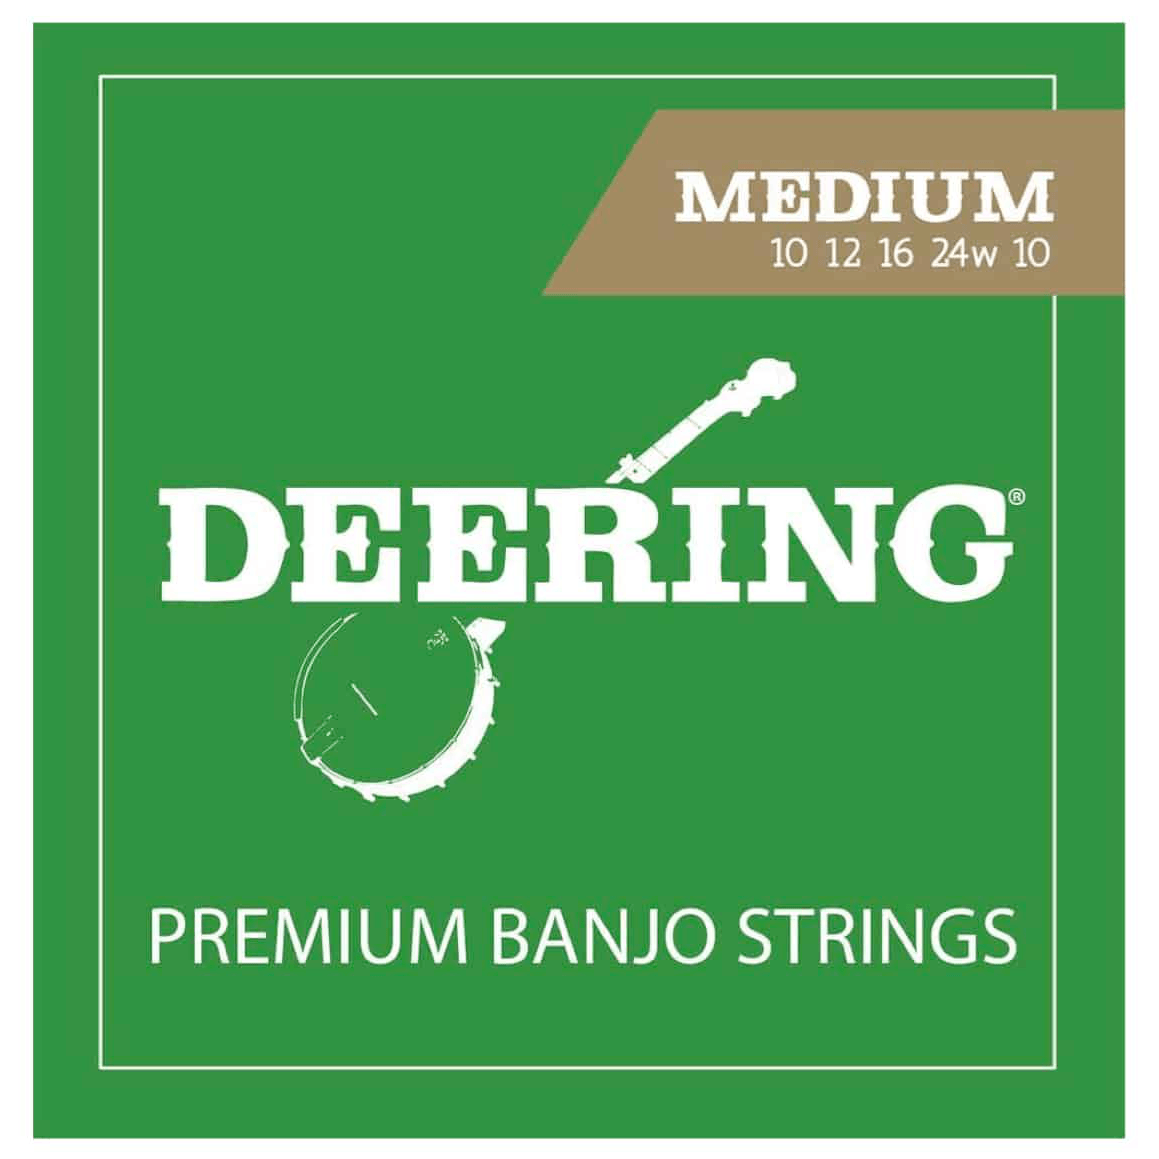 Deering Banjo Strings - Medium - 10 12 16 24W 10 - Strings - Banjo by Deering at Muso's Stuff